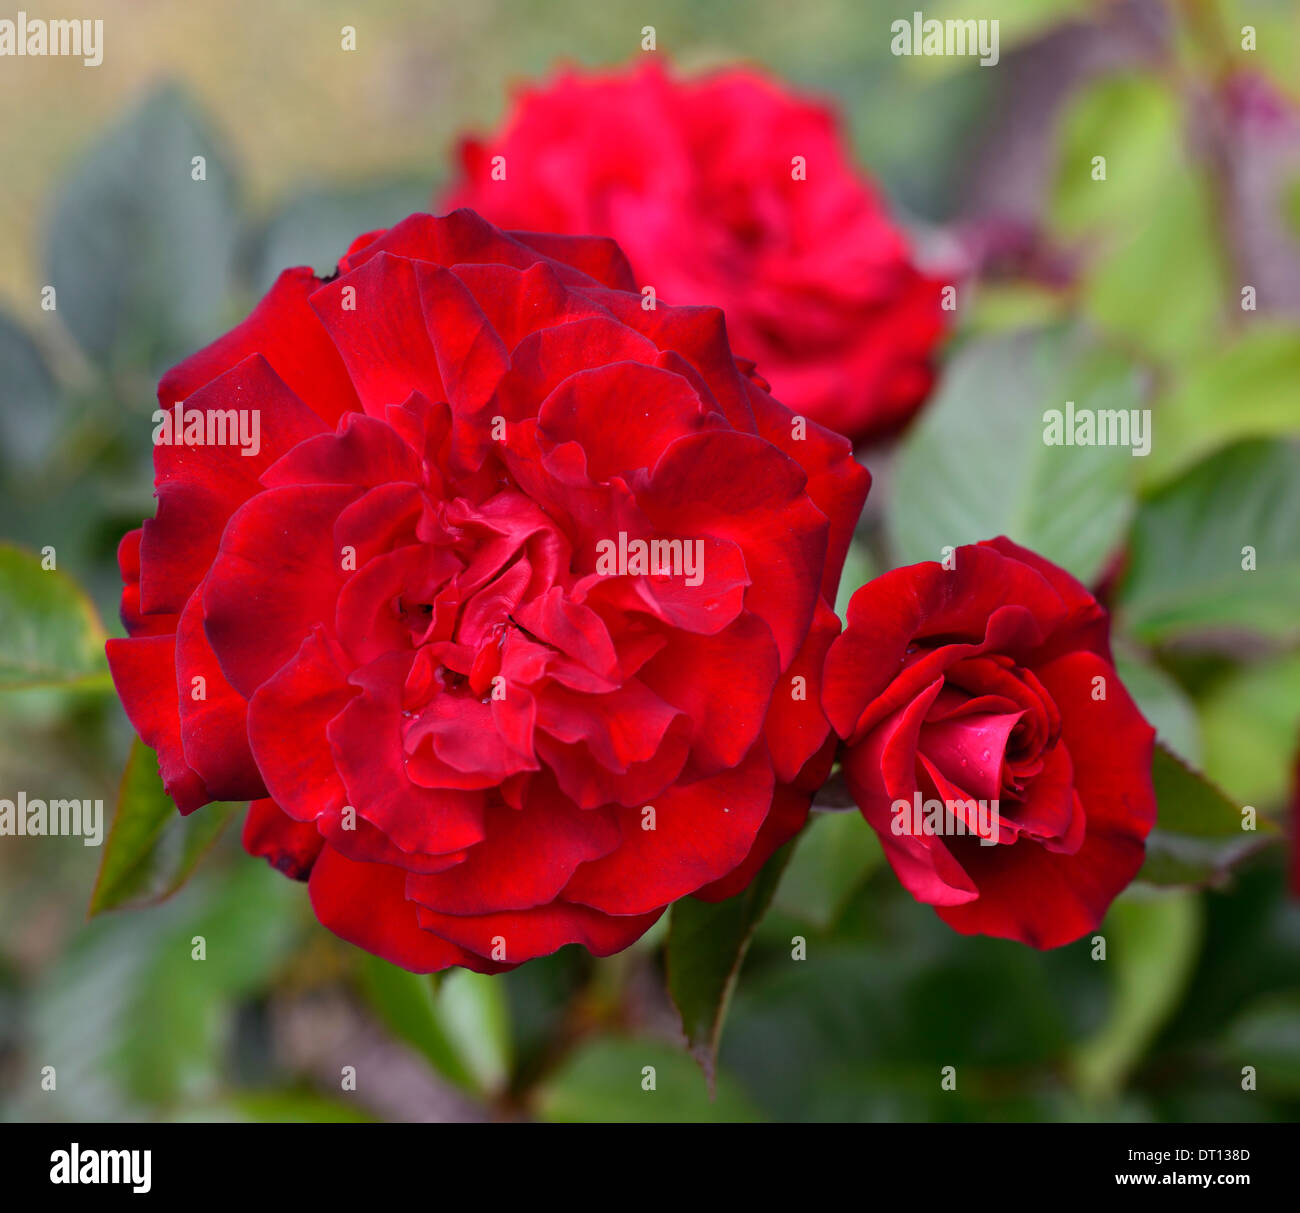 rosa glad tidings tantide floribunda rose roses red flower flowers bloom blooming flowering Stock Photo